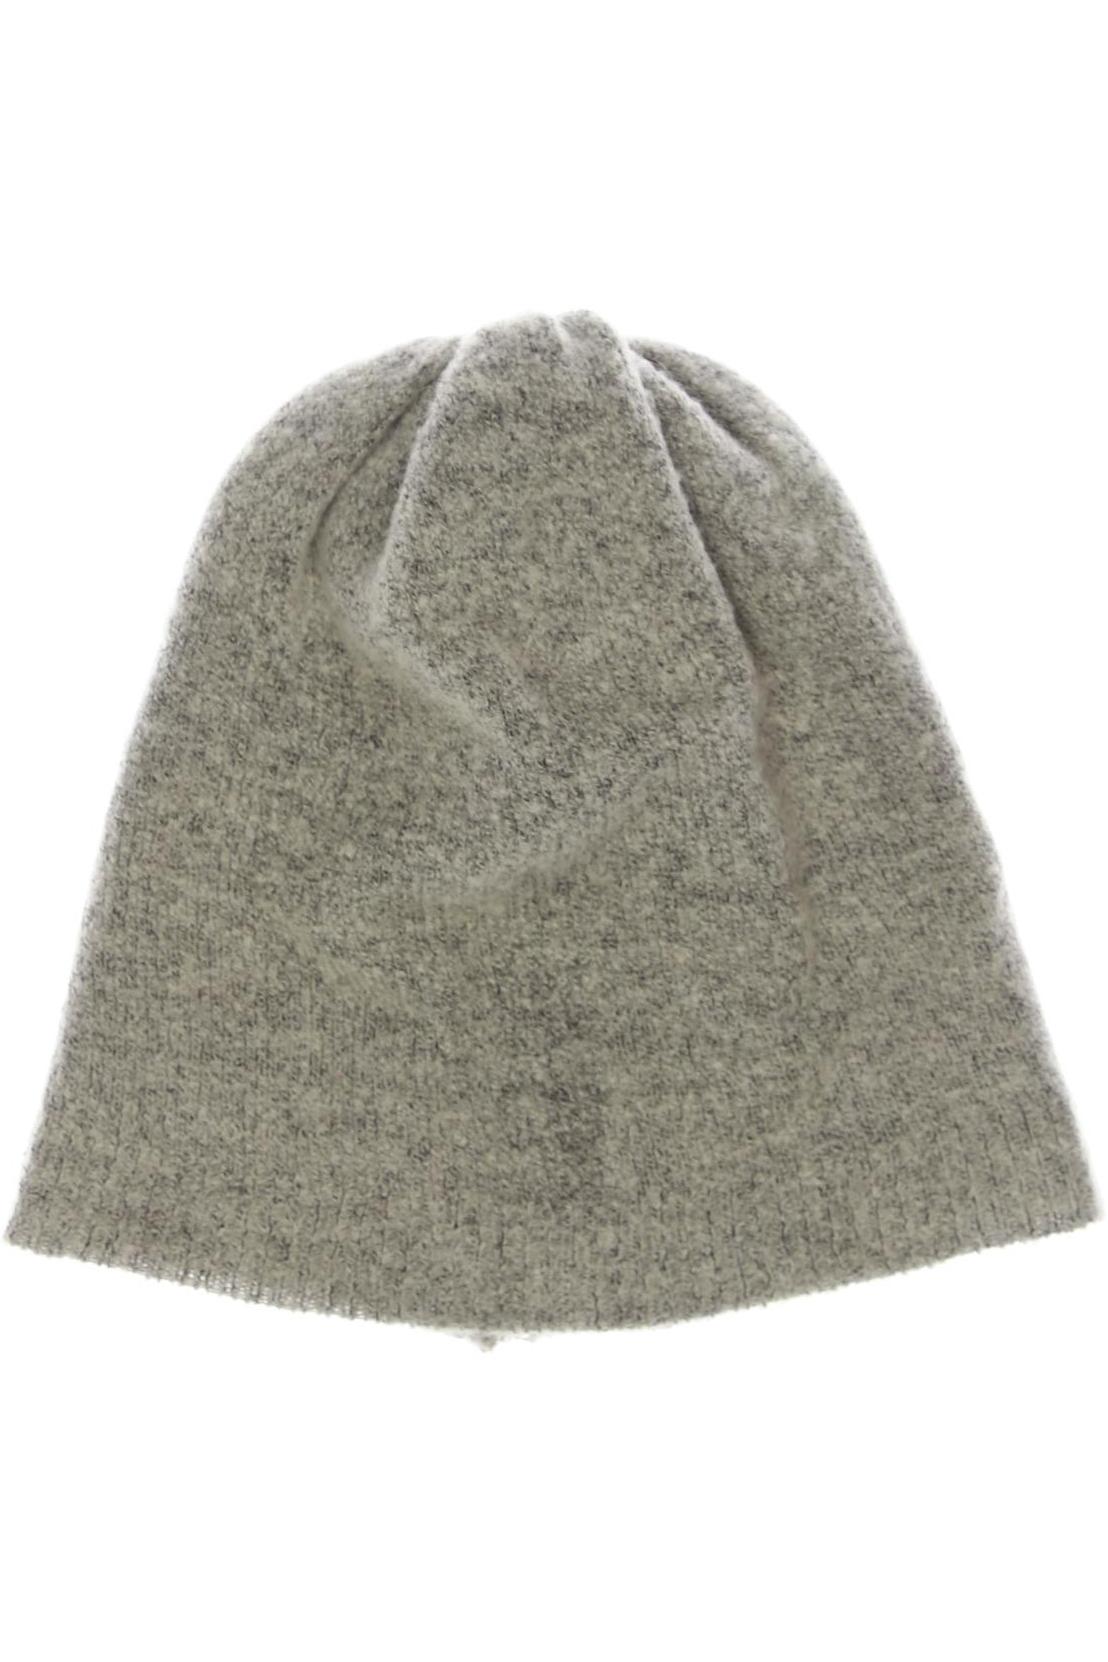 ICHI Damen Hut/Mütze, grau von Ichi